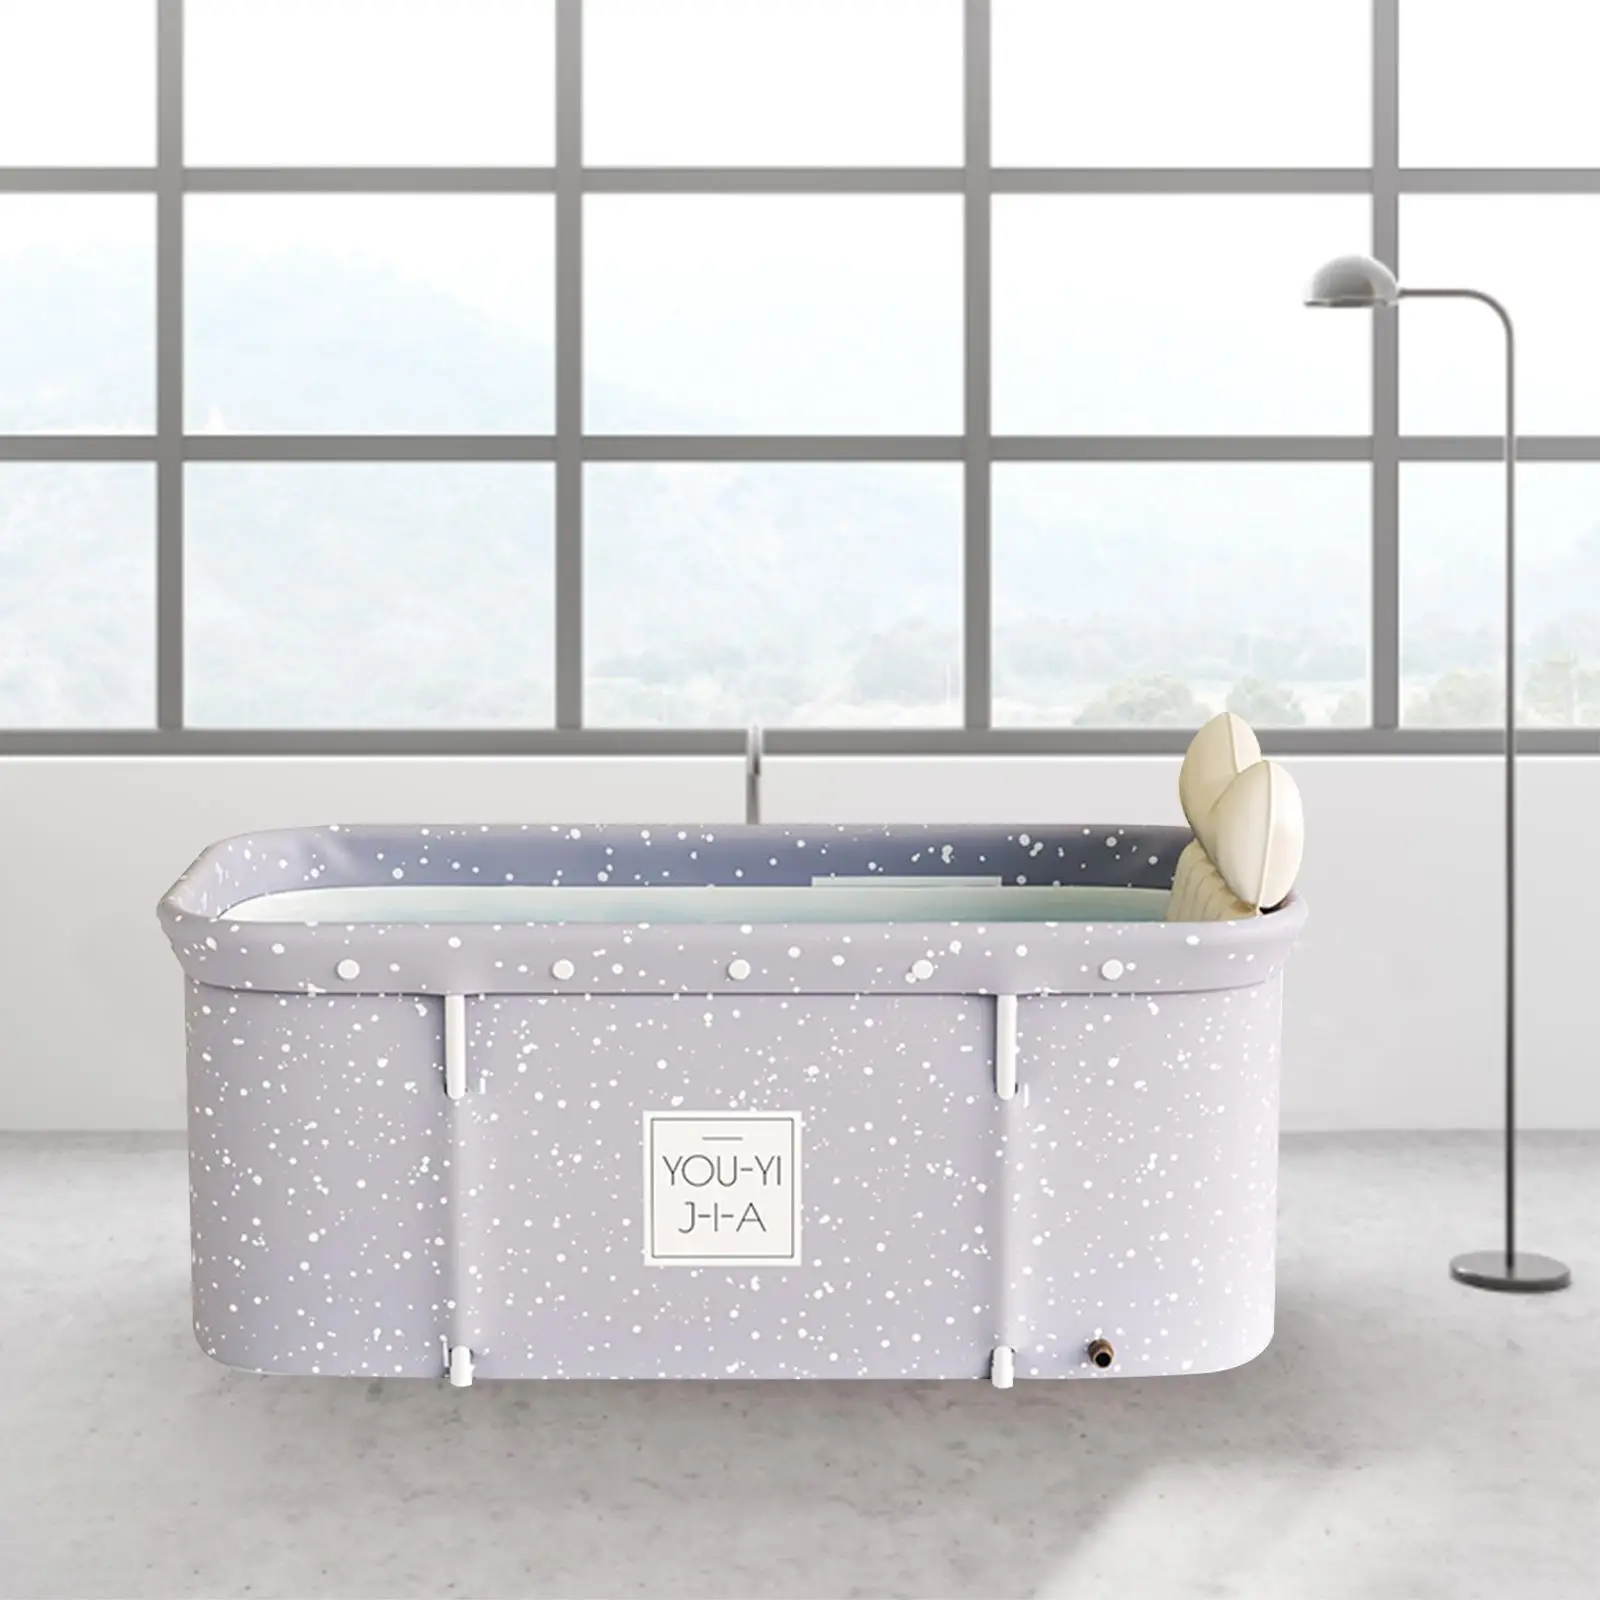 Bathroom Soaking Bath Tub Seat Cushion Swimming Pool Hot Tub for Flower Bath